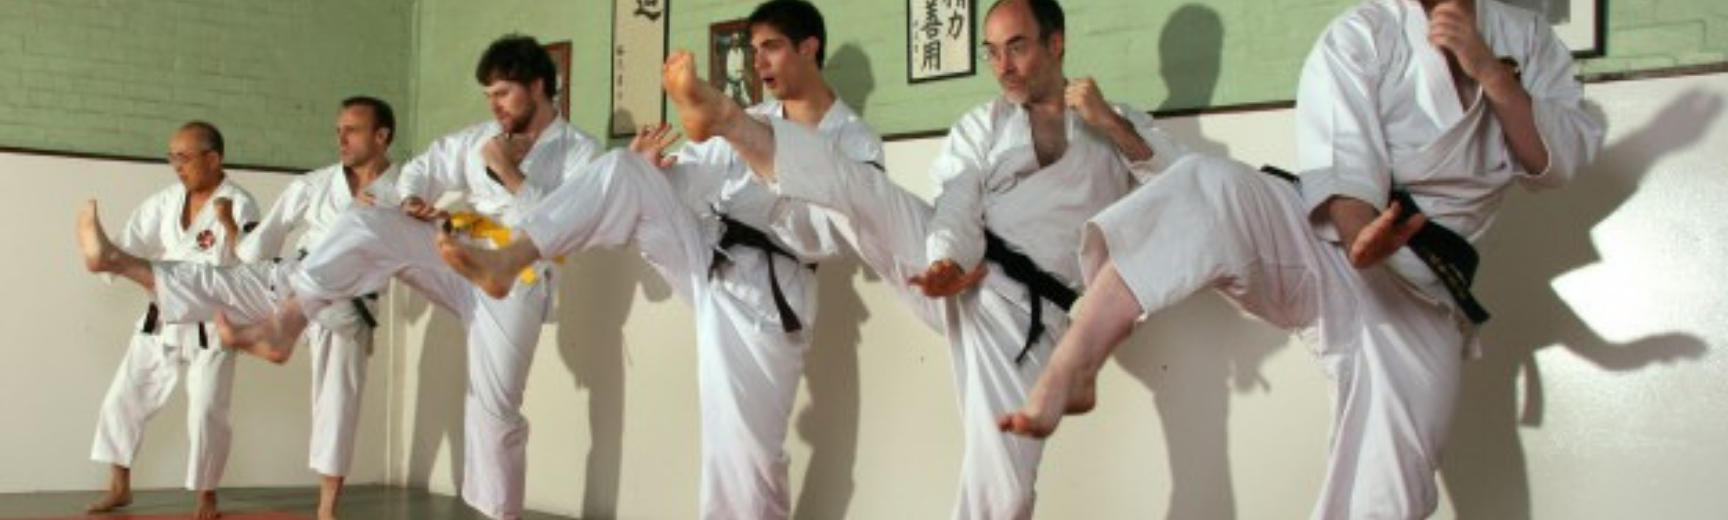 Six men in a row performing a martial arts kick